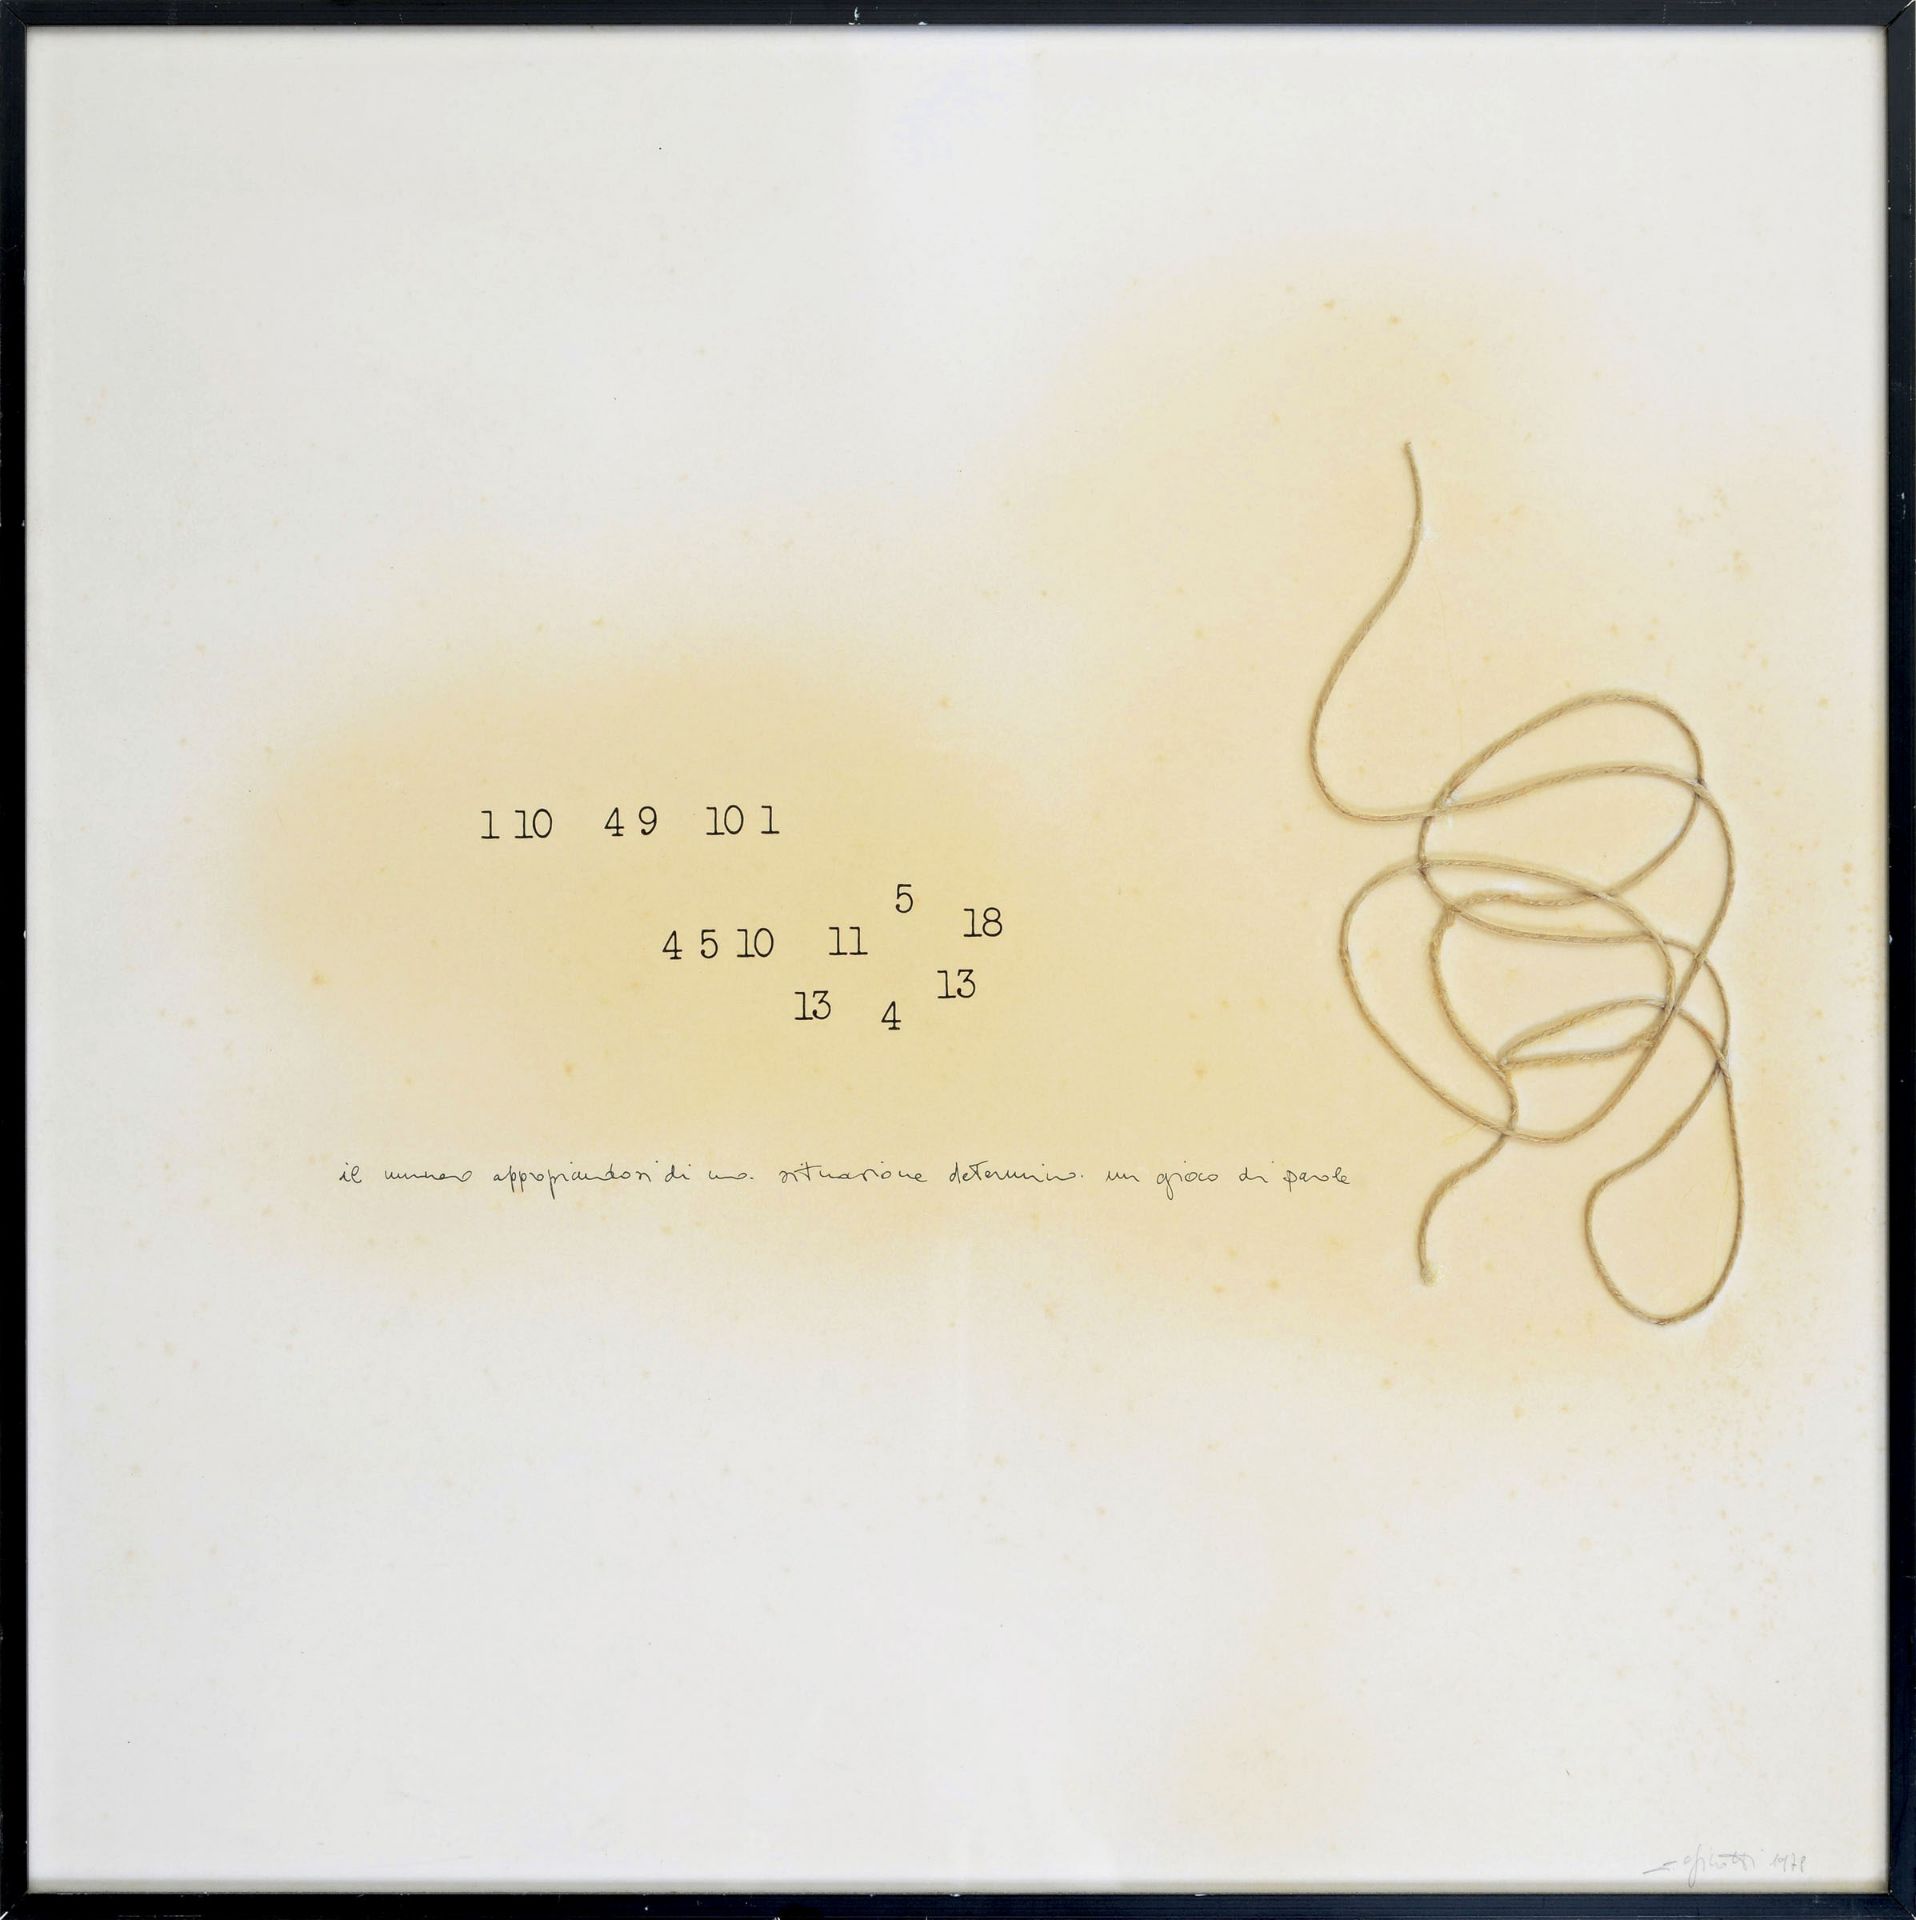 Carlo Finotti (1954), Senza titolo, 1978 - corda e tecnica mista su carta, cm [...]